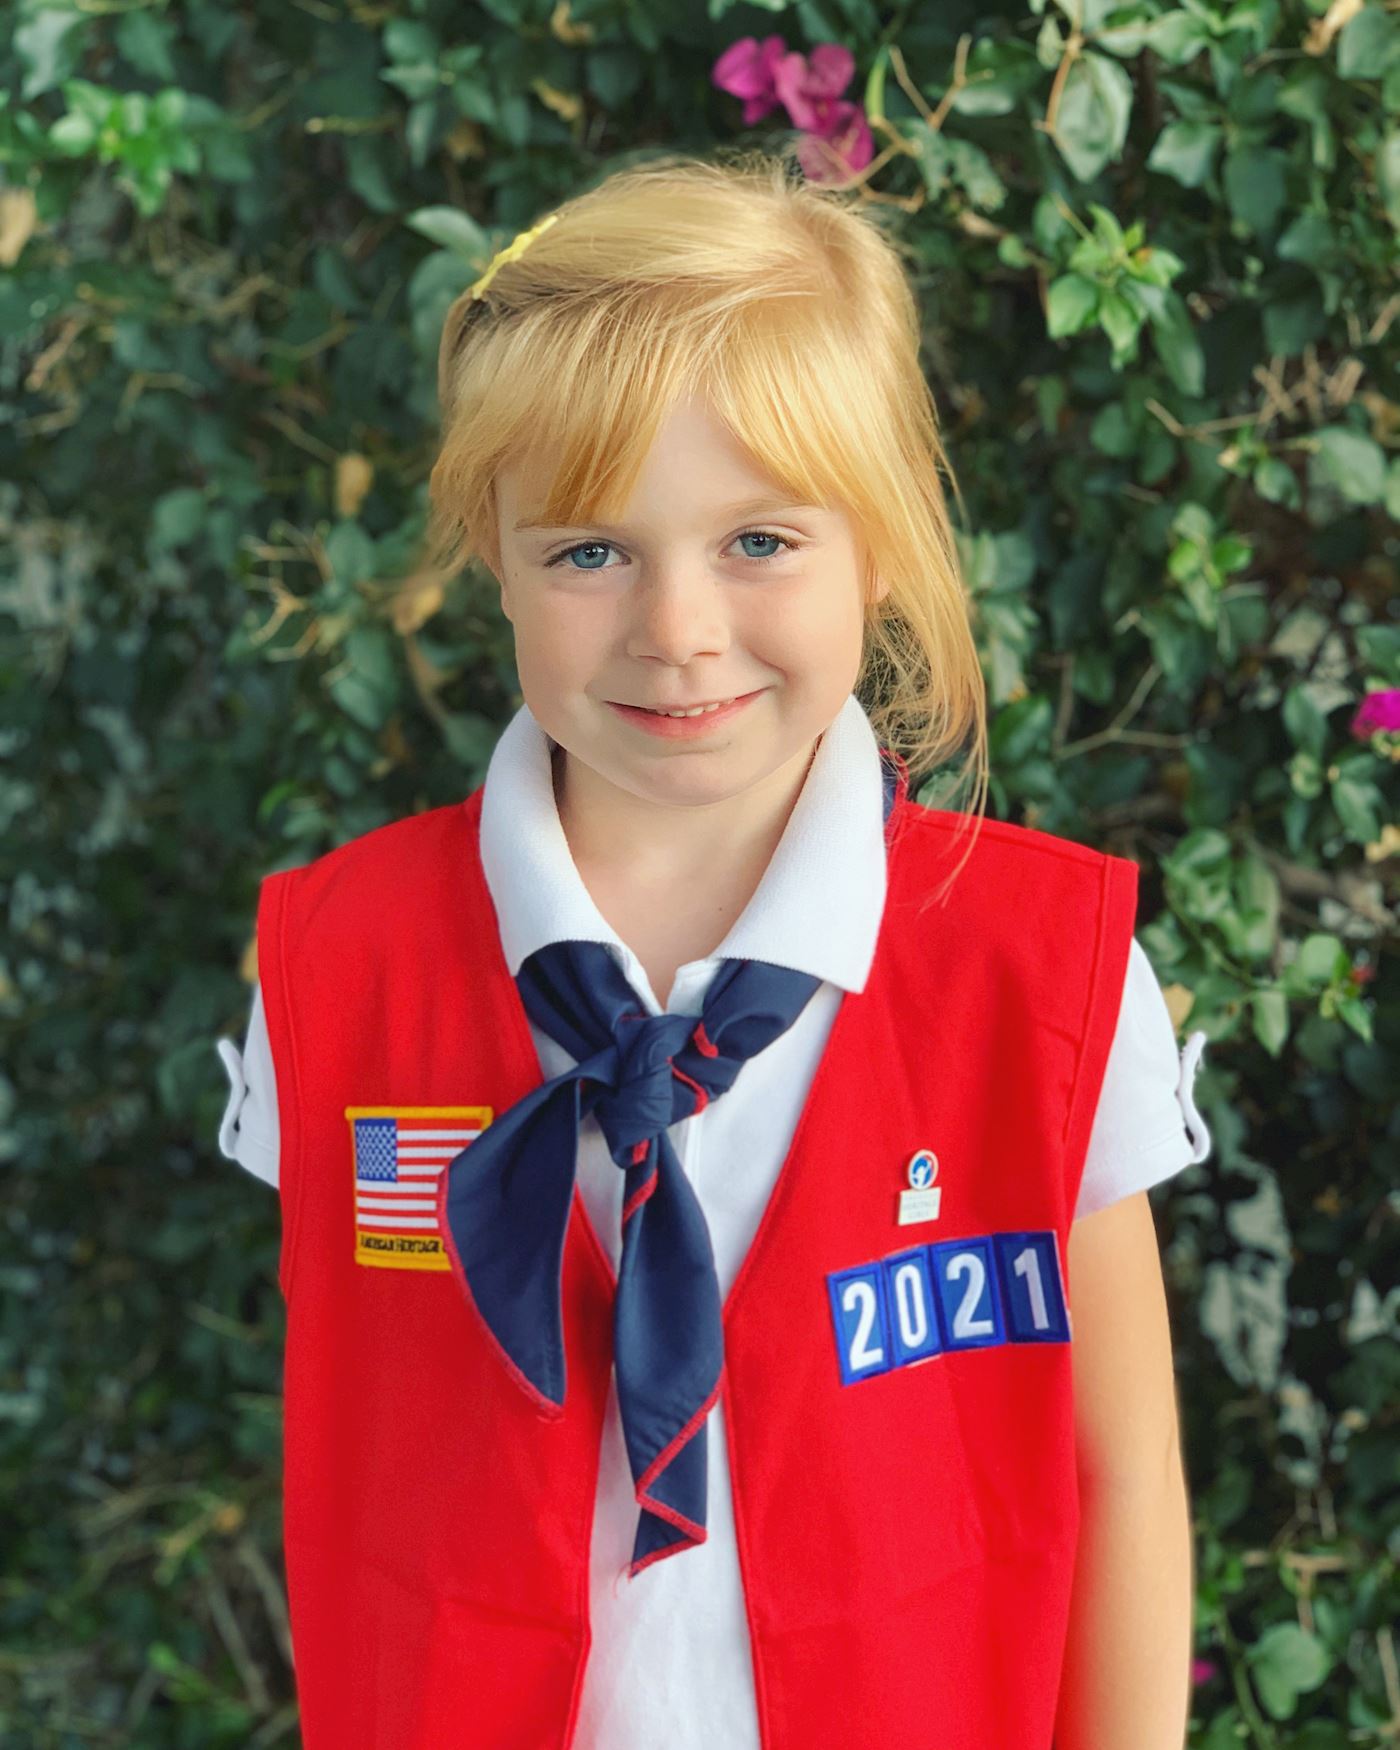 Brynna in her AHG uniform